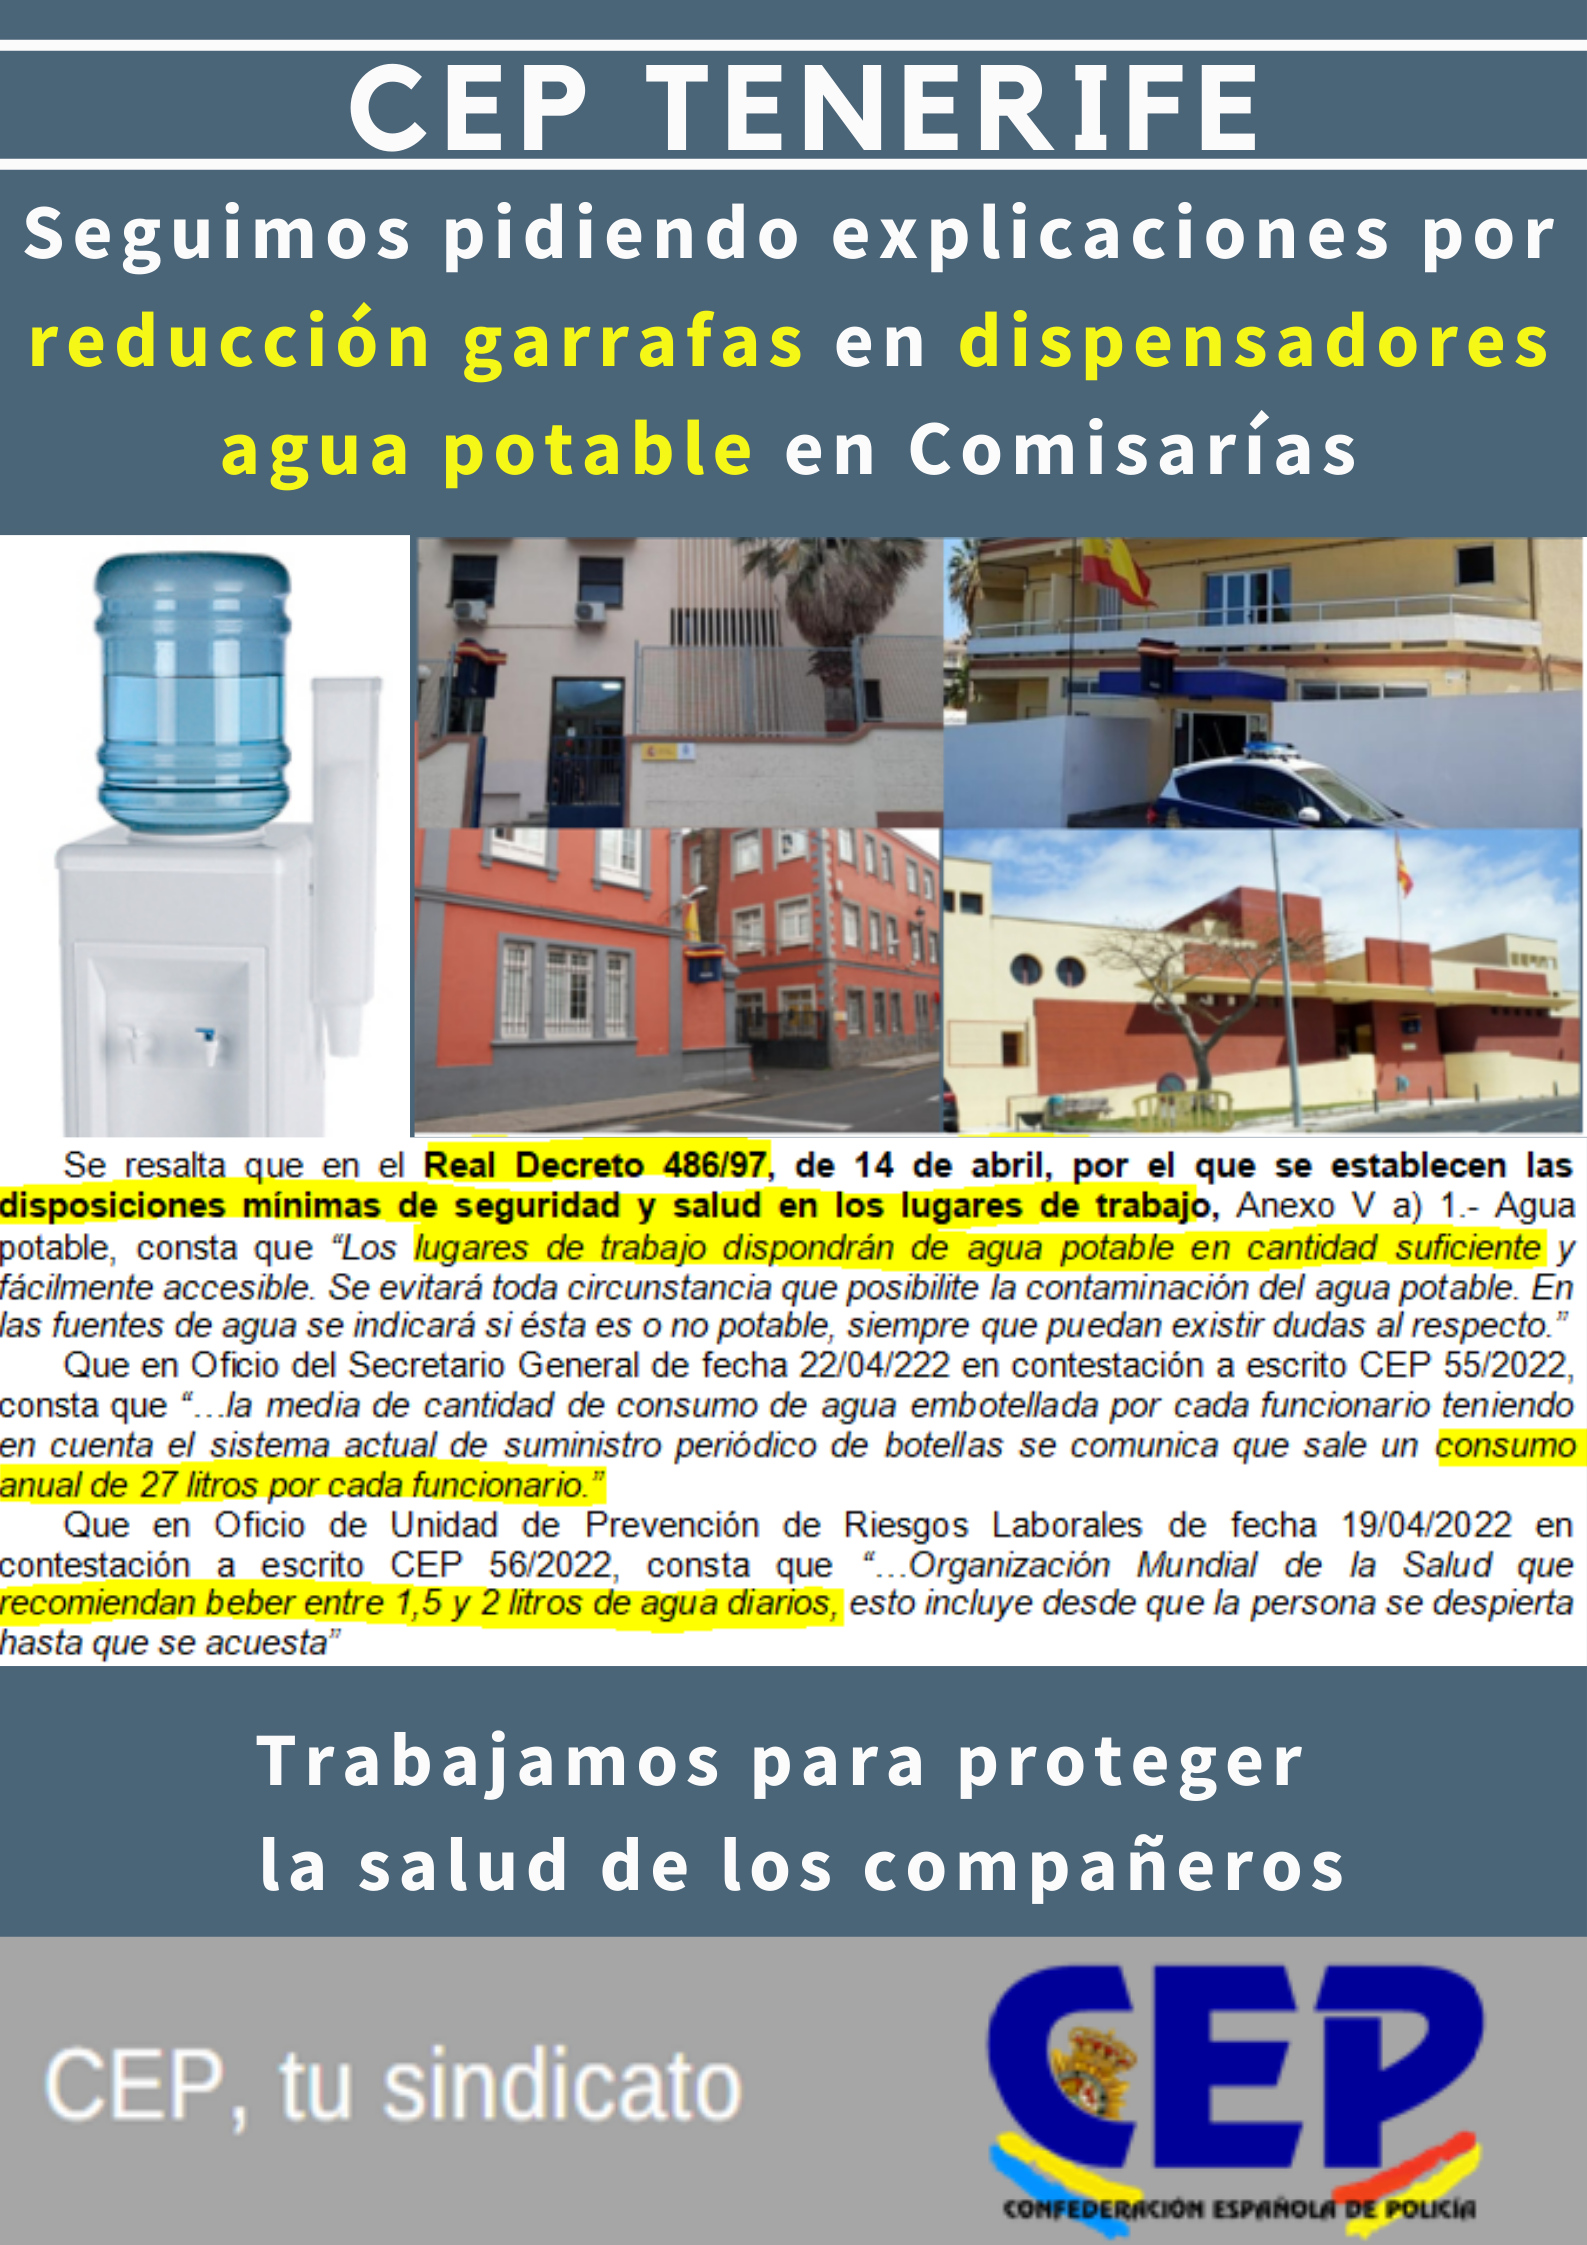 Seguimos pidiendo explicaciones reducción garrafas en dispensadores agua potable en comisarías